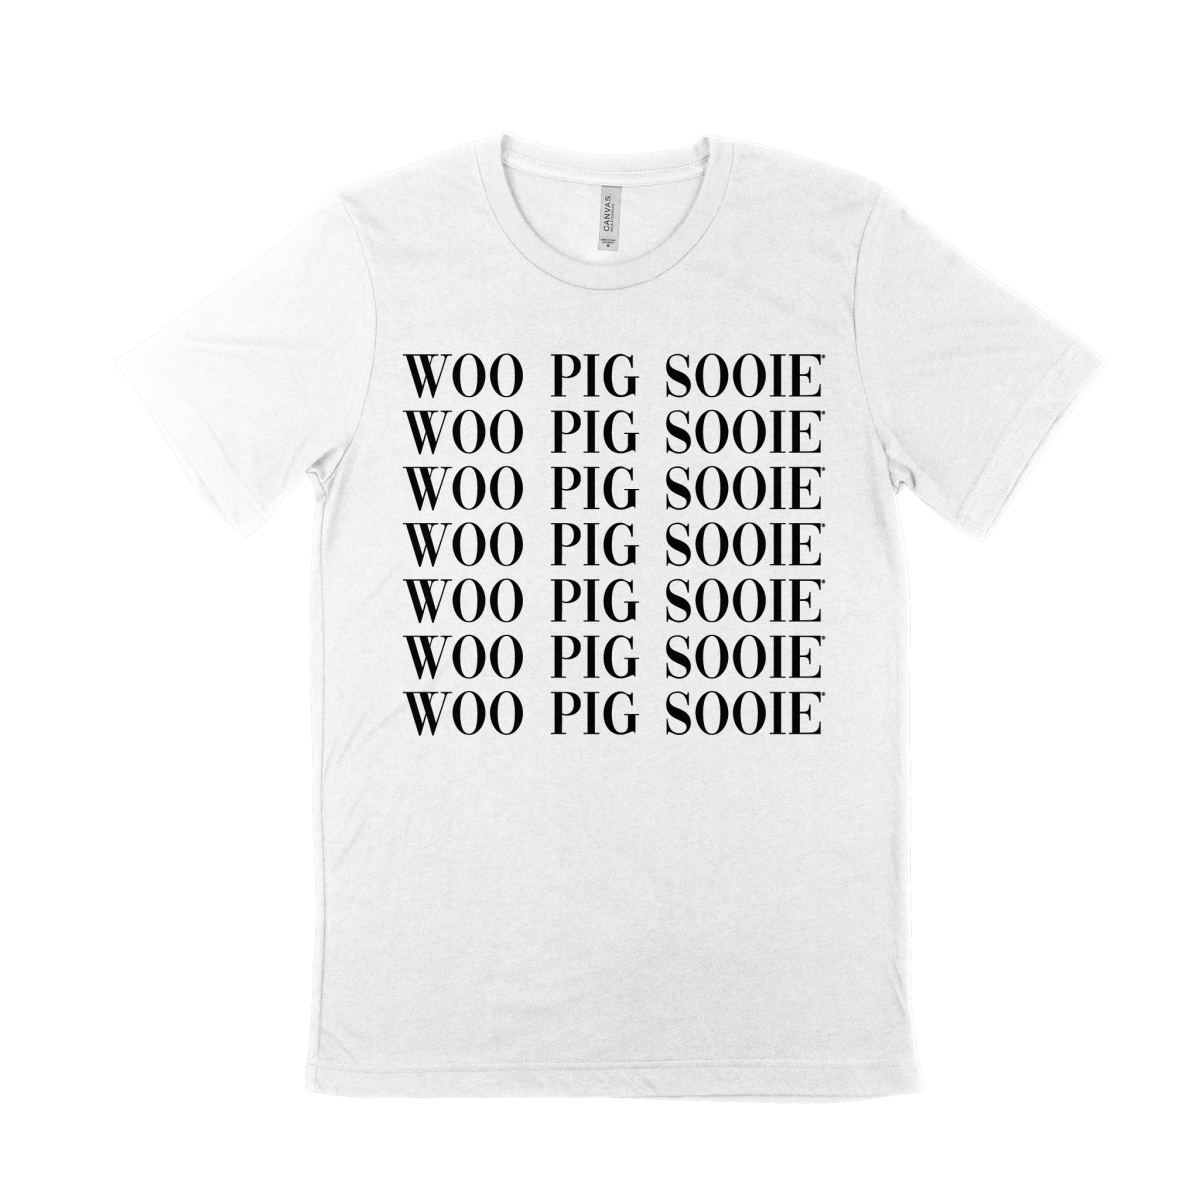 Woo Pig Sooie Repeat Tee - Shop B-Unlimited